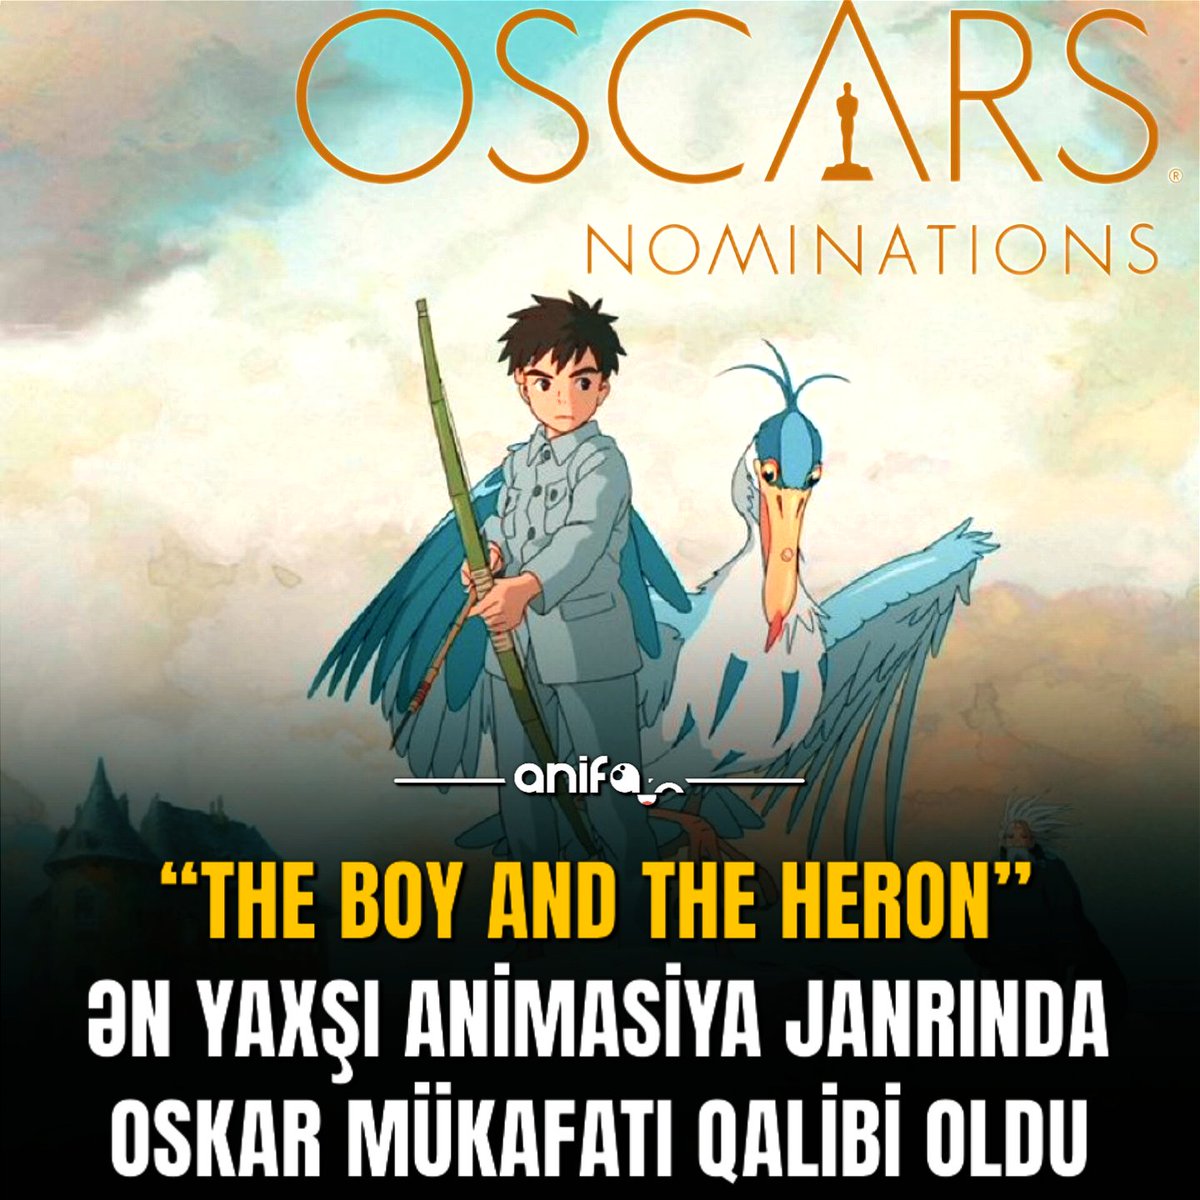 Hayao Miyazakinin 'THE BOY AND THE HERON'
anime filmi 'SPIRITED AWAY' anime filmindən sonra ən yaxşı animasiya janrında OSKAR qazanmış  2-ci filmi oldu. 
#anifan #anifannews #animeazerbaycan #animenews #anime #hayaomiyazaki #studioghibli #oscarnominee #theboyandtheheron